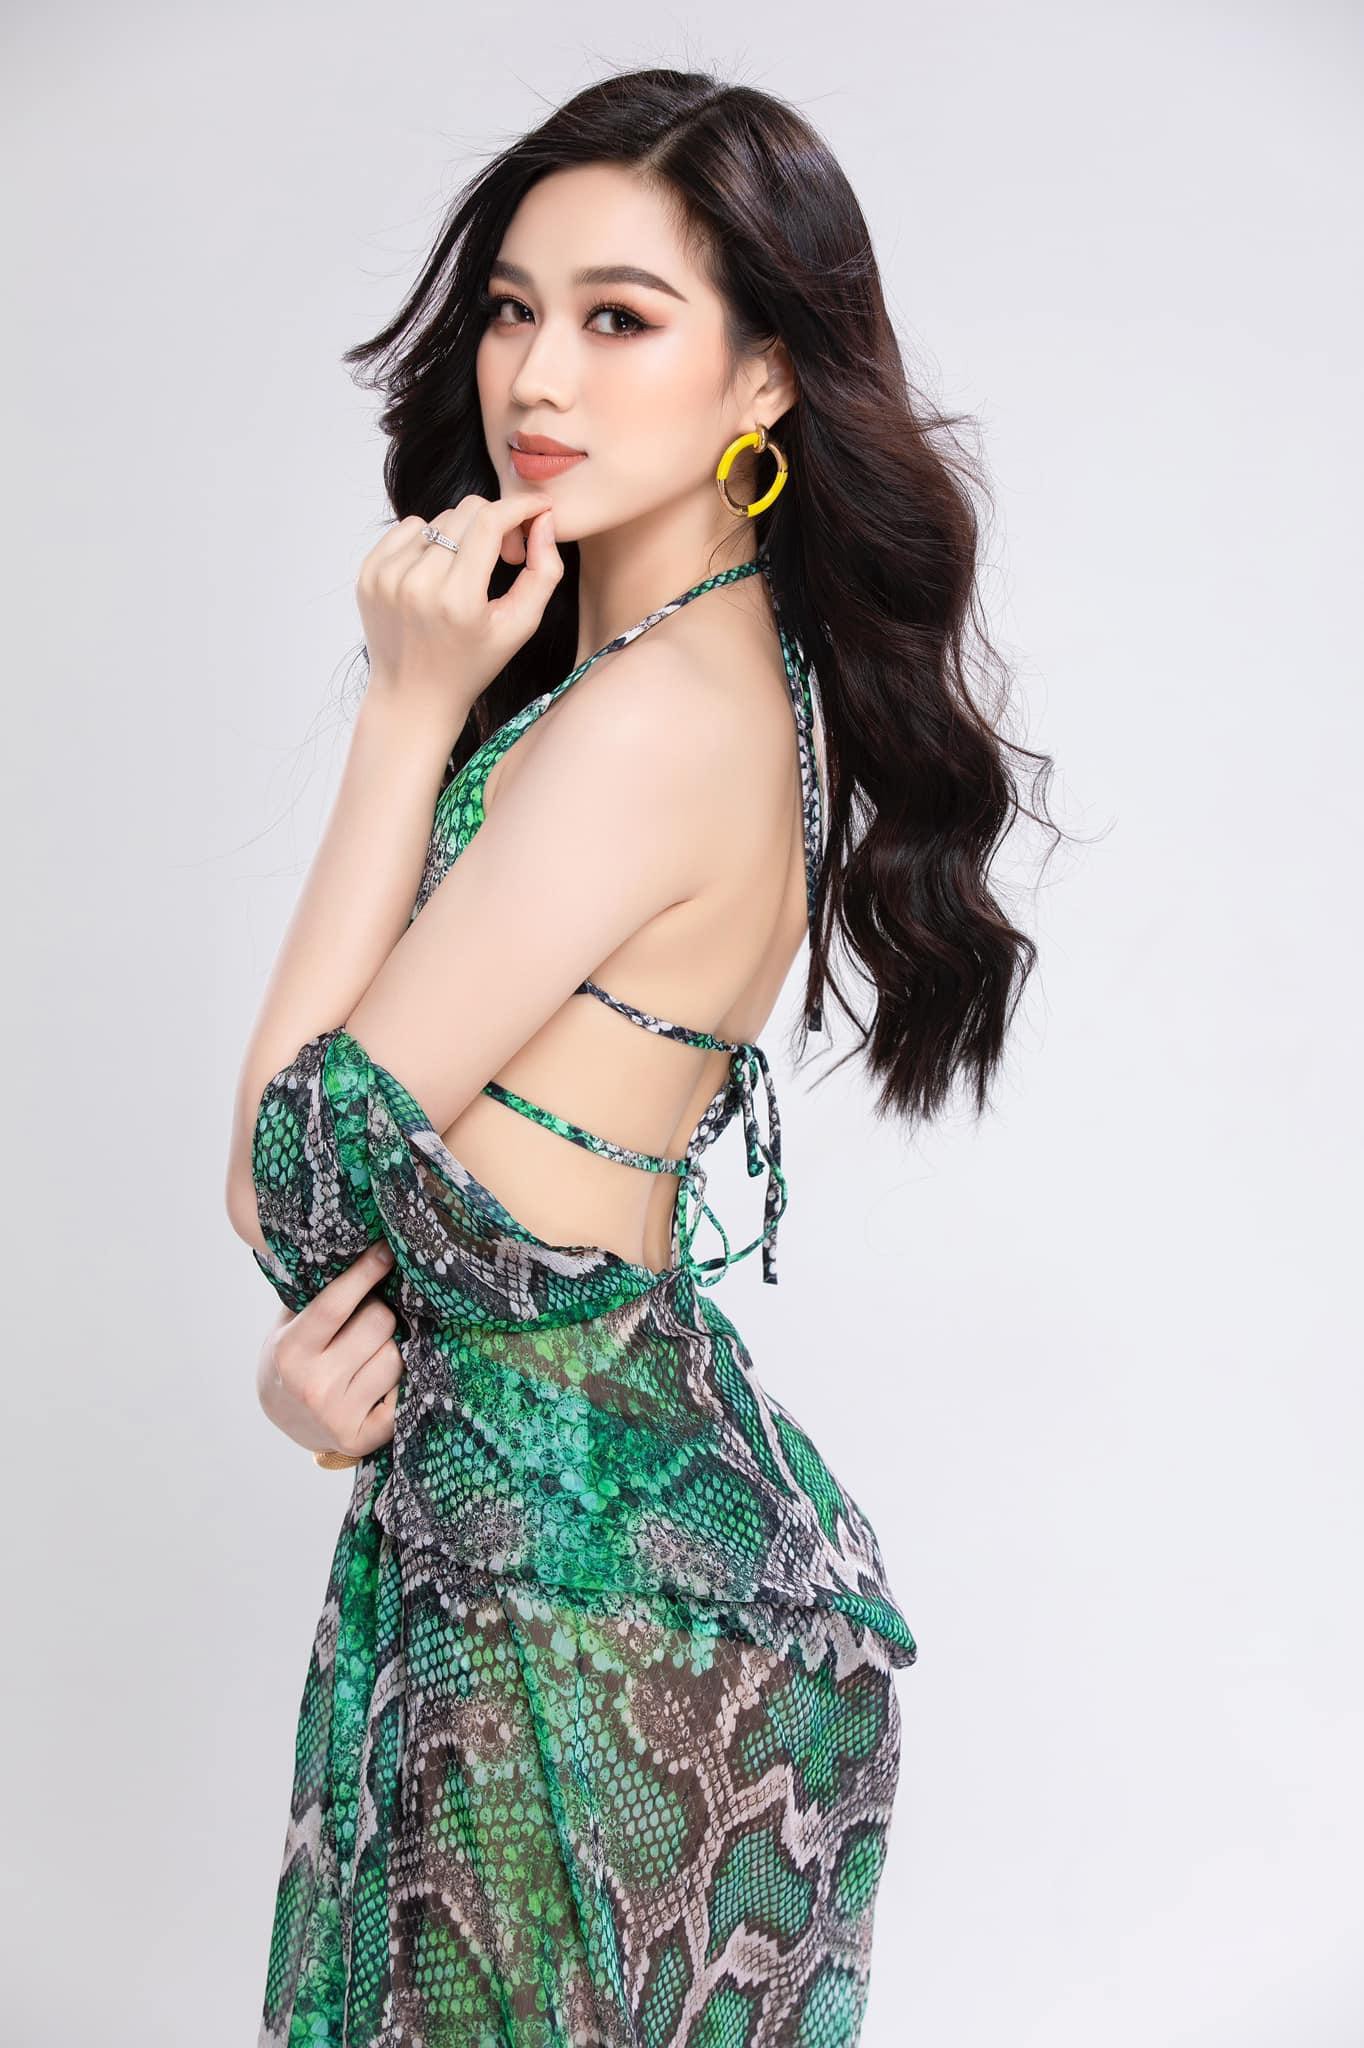 Hoa hậu Đỗ Thị Hà lần đầu tung ảnh bikini sau 6 tháng đăng quang ảnh 3